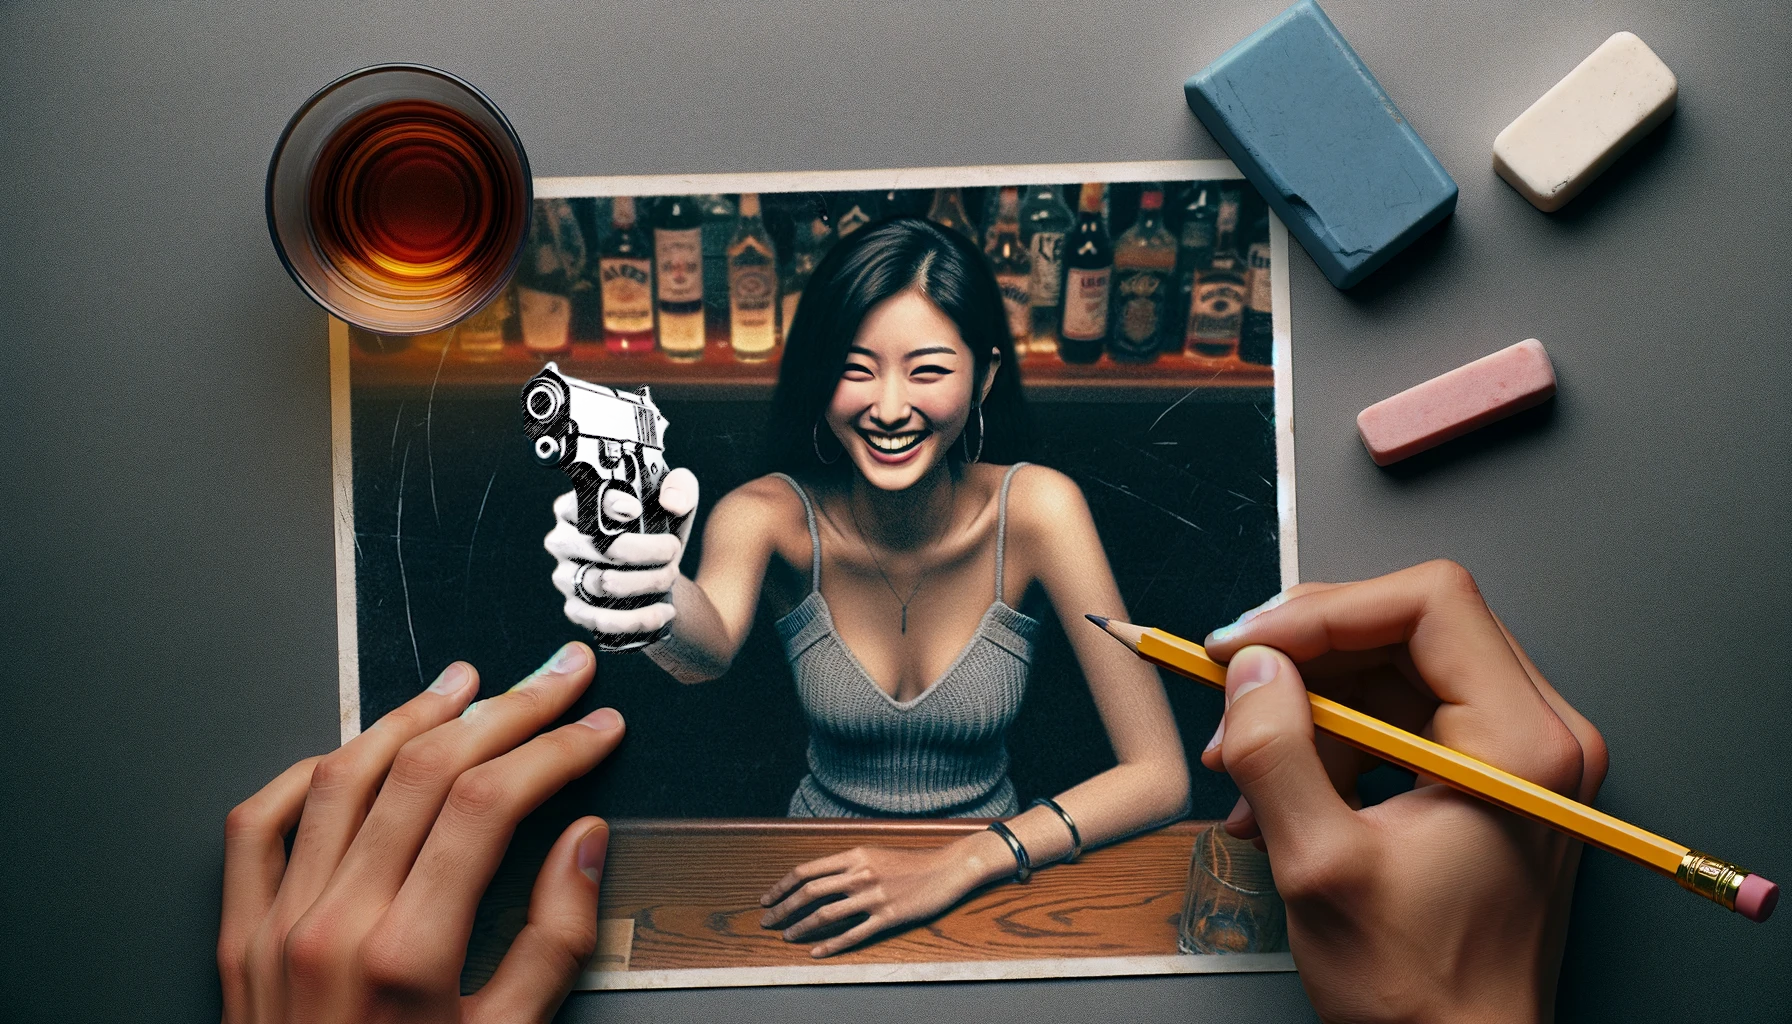 Une photo d'une jeune femme souriante a été altérée par un dessinateur pour donner l'impression qu'elle tient une arme (crayonnée sur la photo). © Dall.E